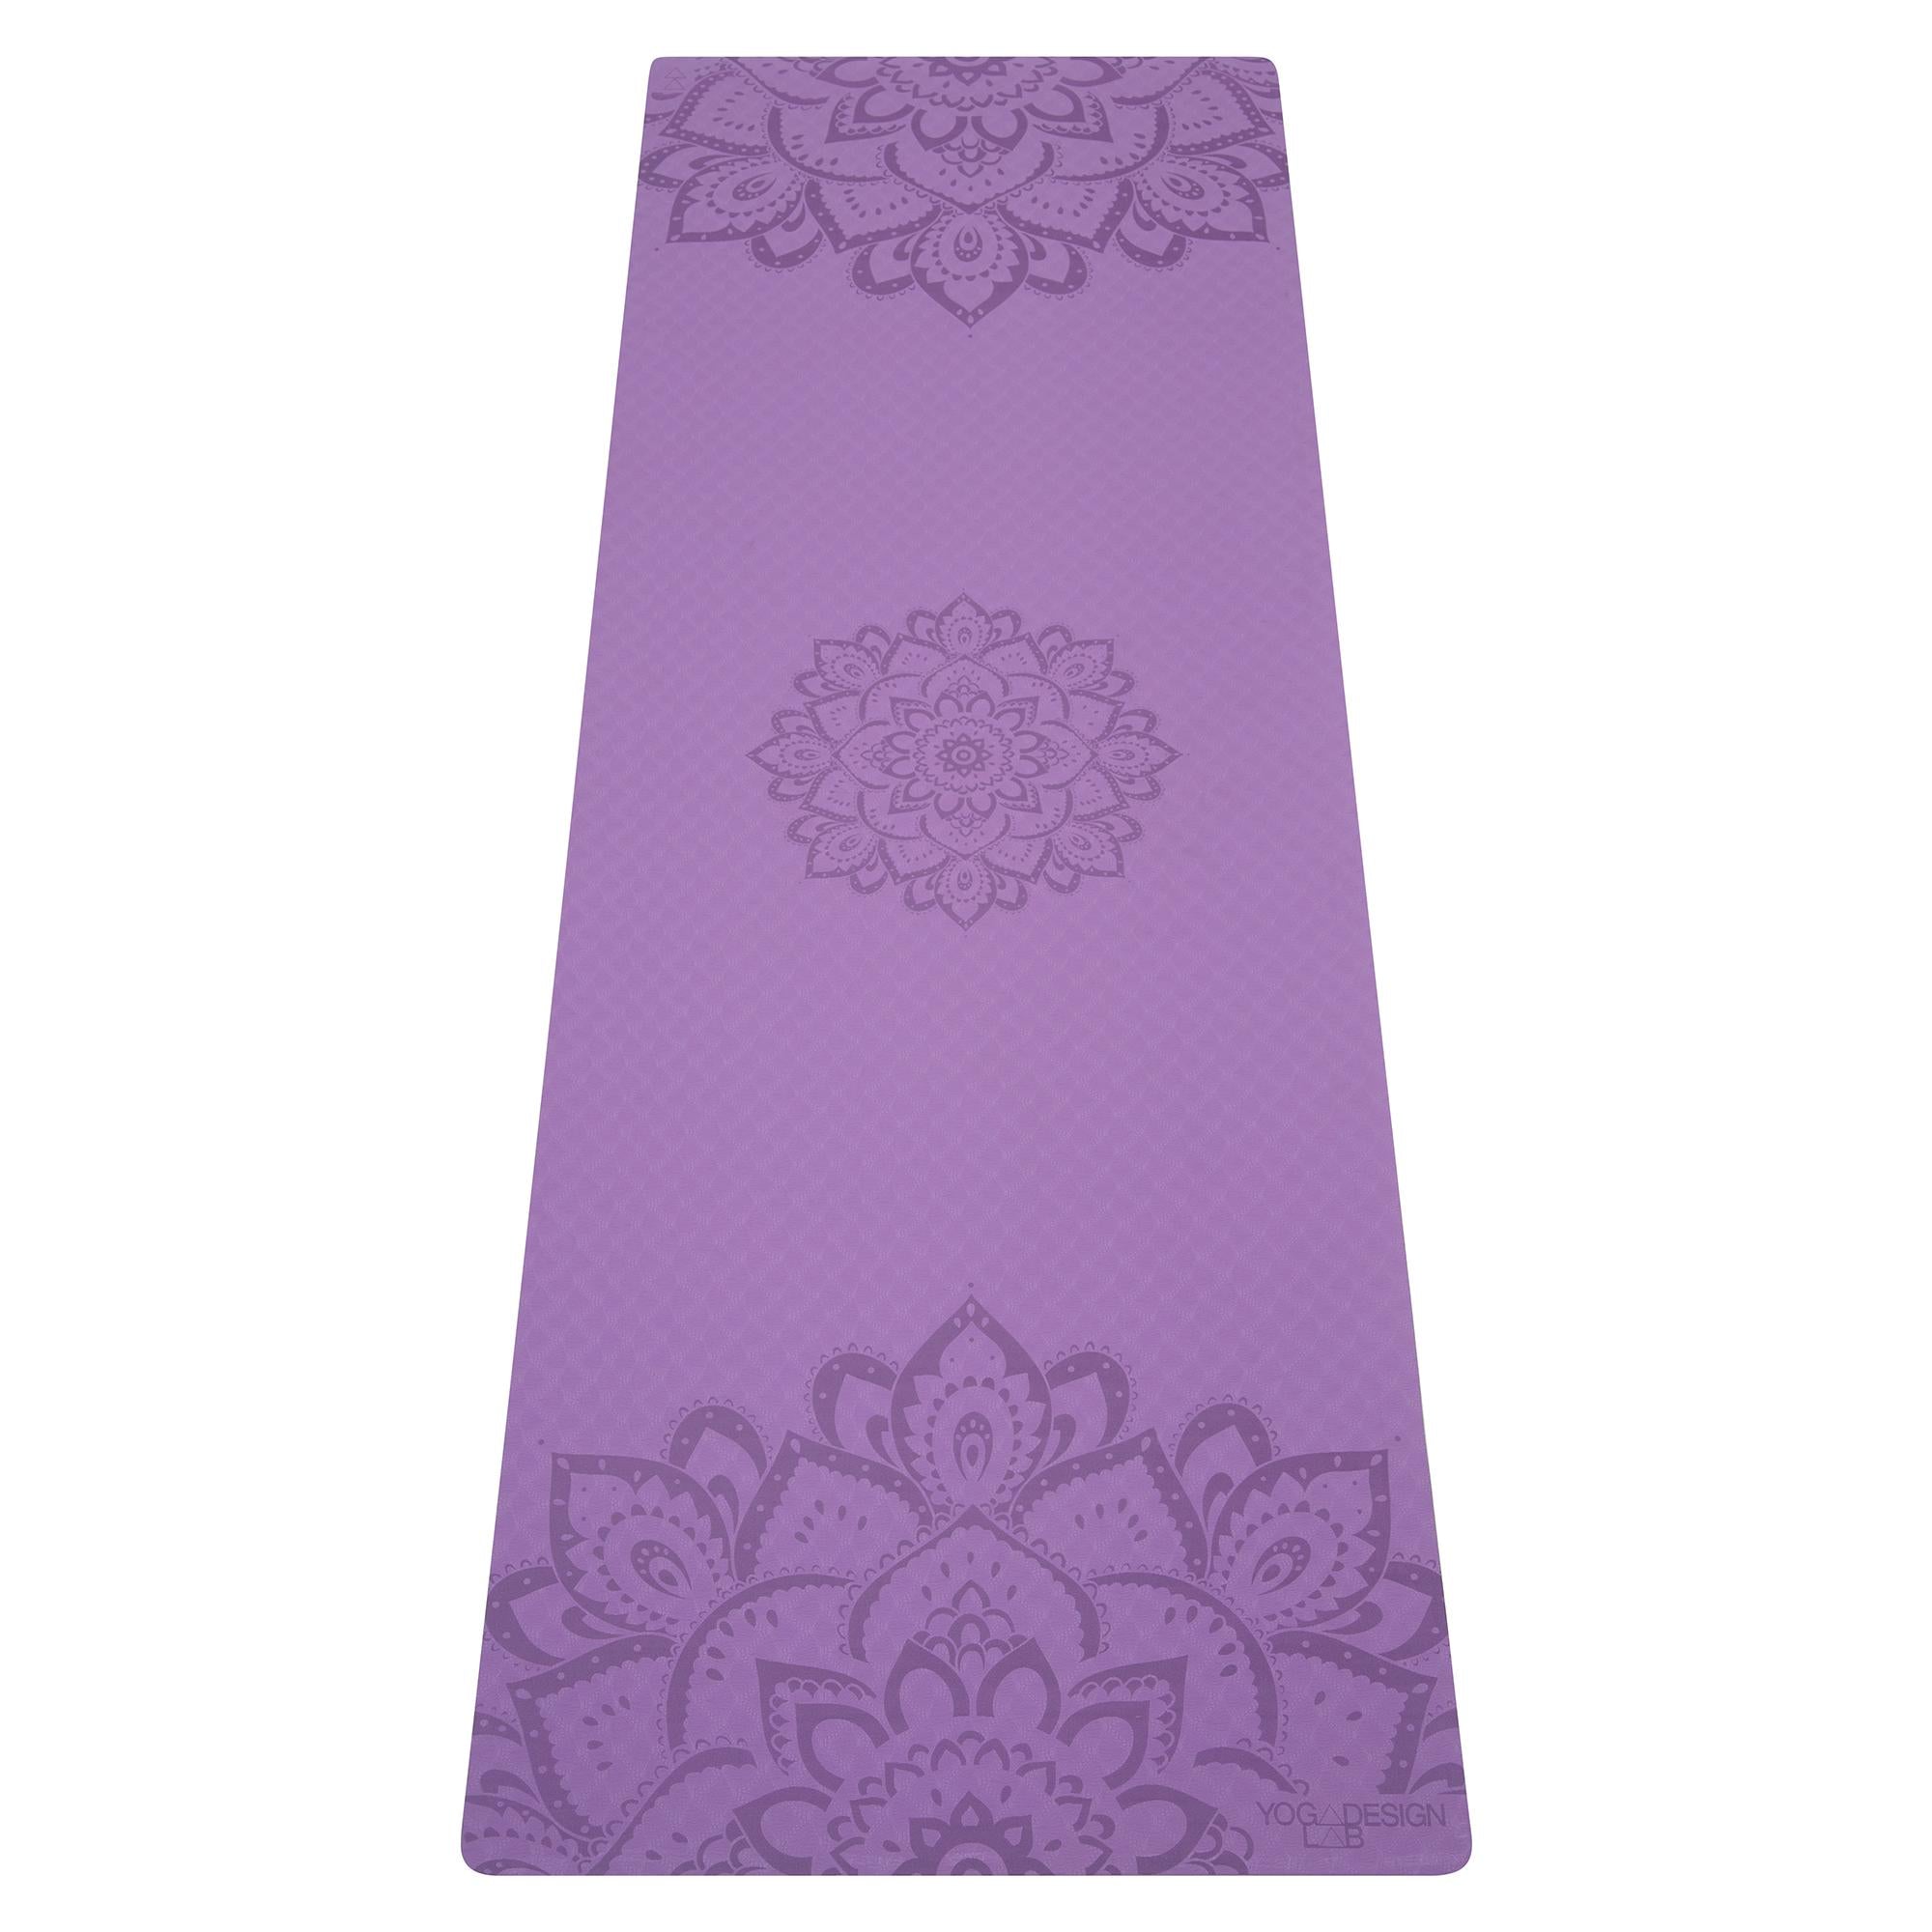 Personalized Yoga Mat, Custom Yoga Mats, Yoga Lover Gift, Pilates Yoga Mat,  Personalized Mandala, PRINTED YOGA MAT With Name, Microfiber Mat 